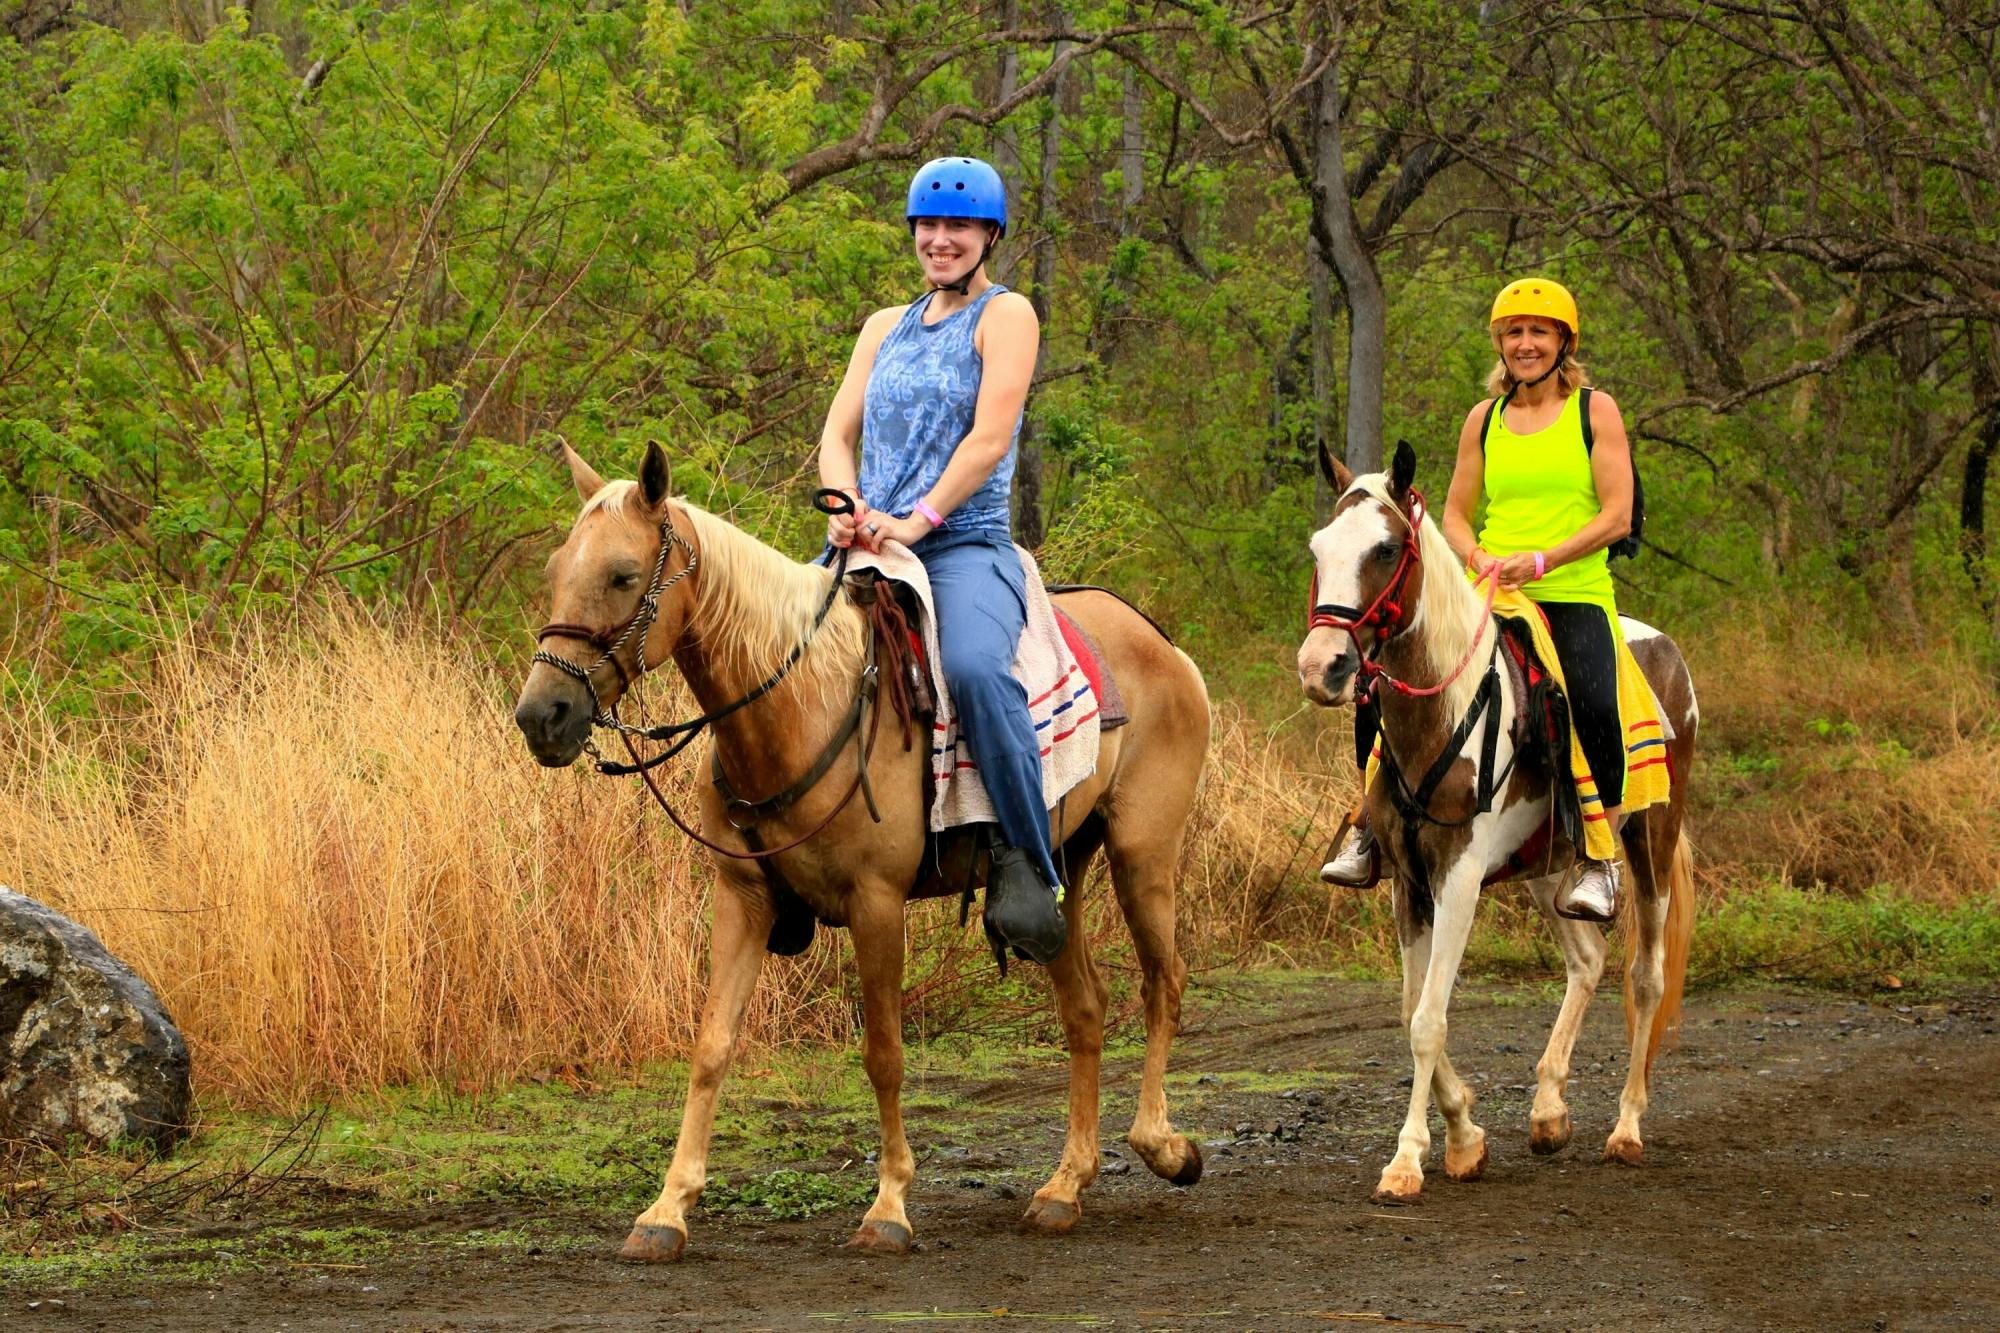 Diamante Eco Park Horse Riding Tour